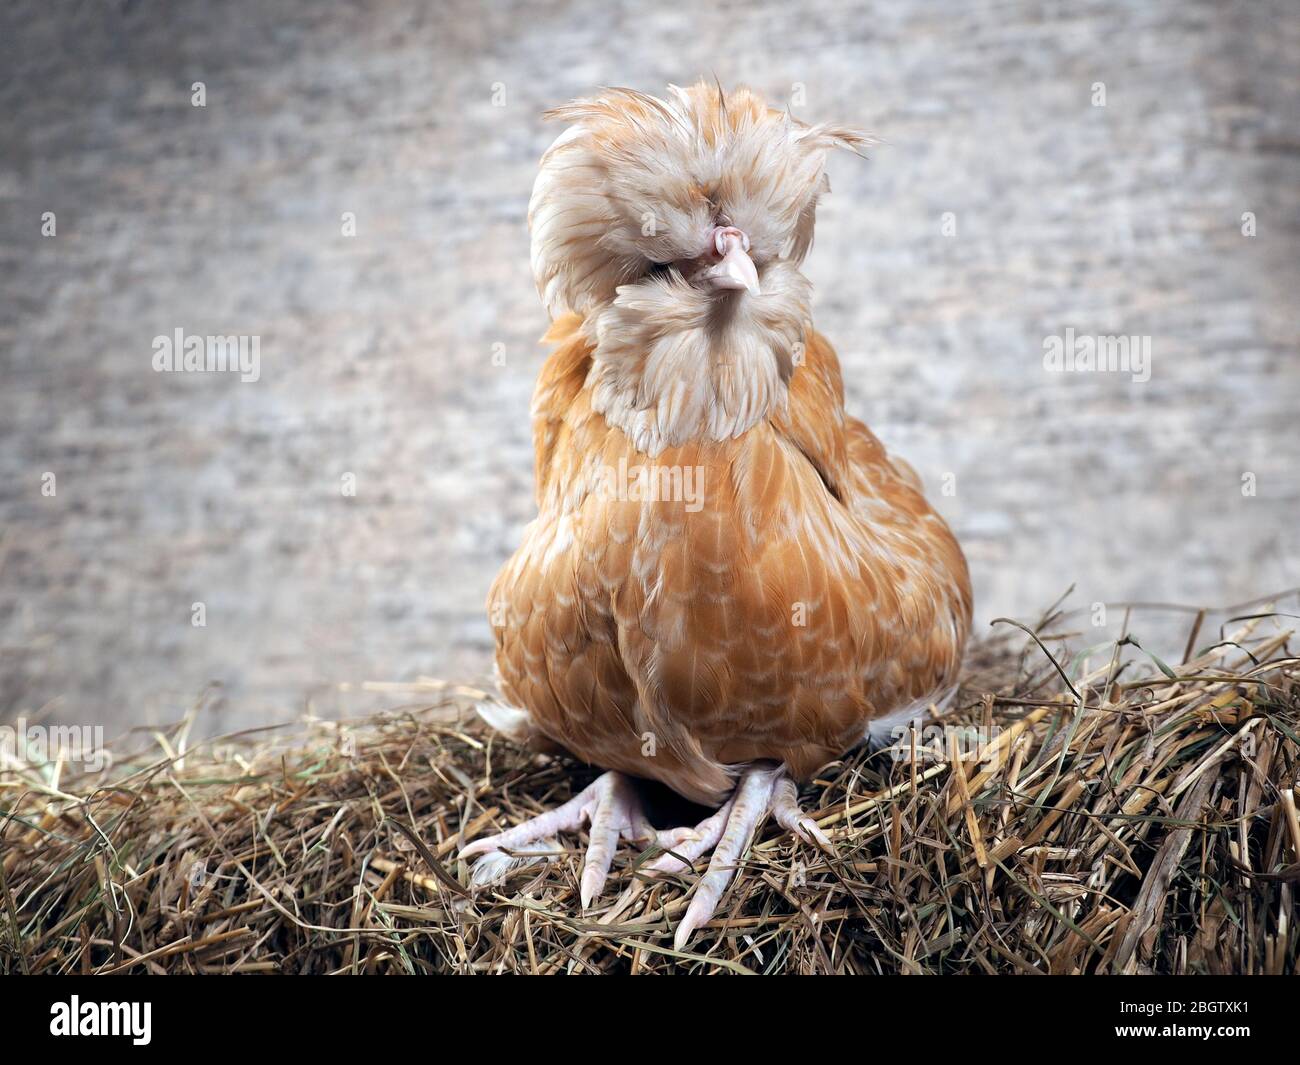 Seltene exotische Hühner mit großen Federn auf dem Kopf Stockfotografie -  Alamy